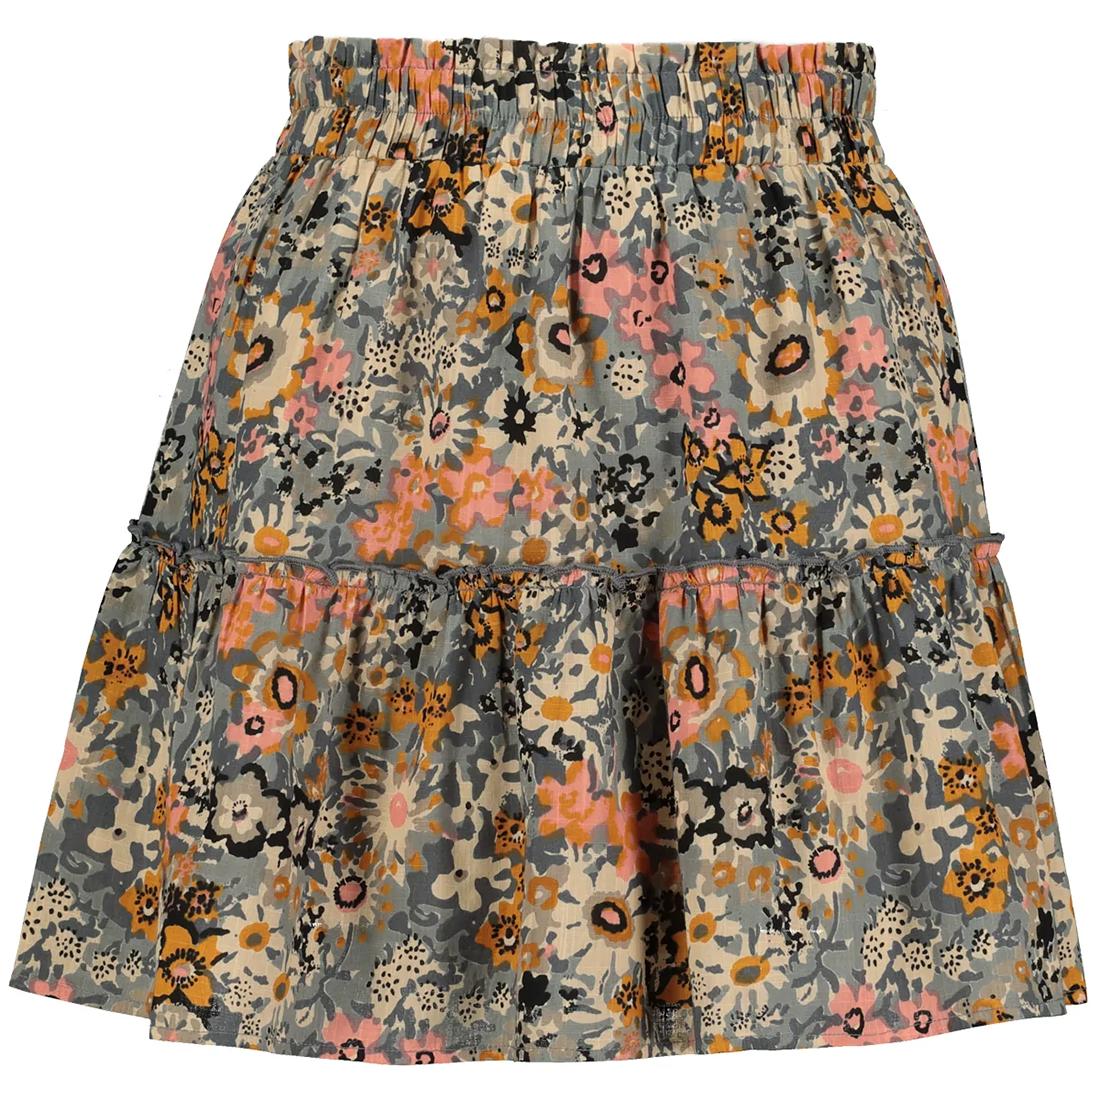  Ruffle Mini Skirt